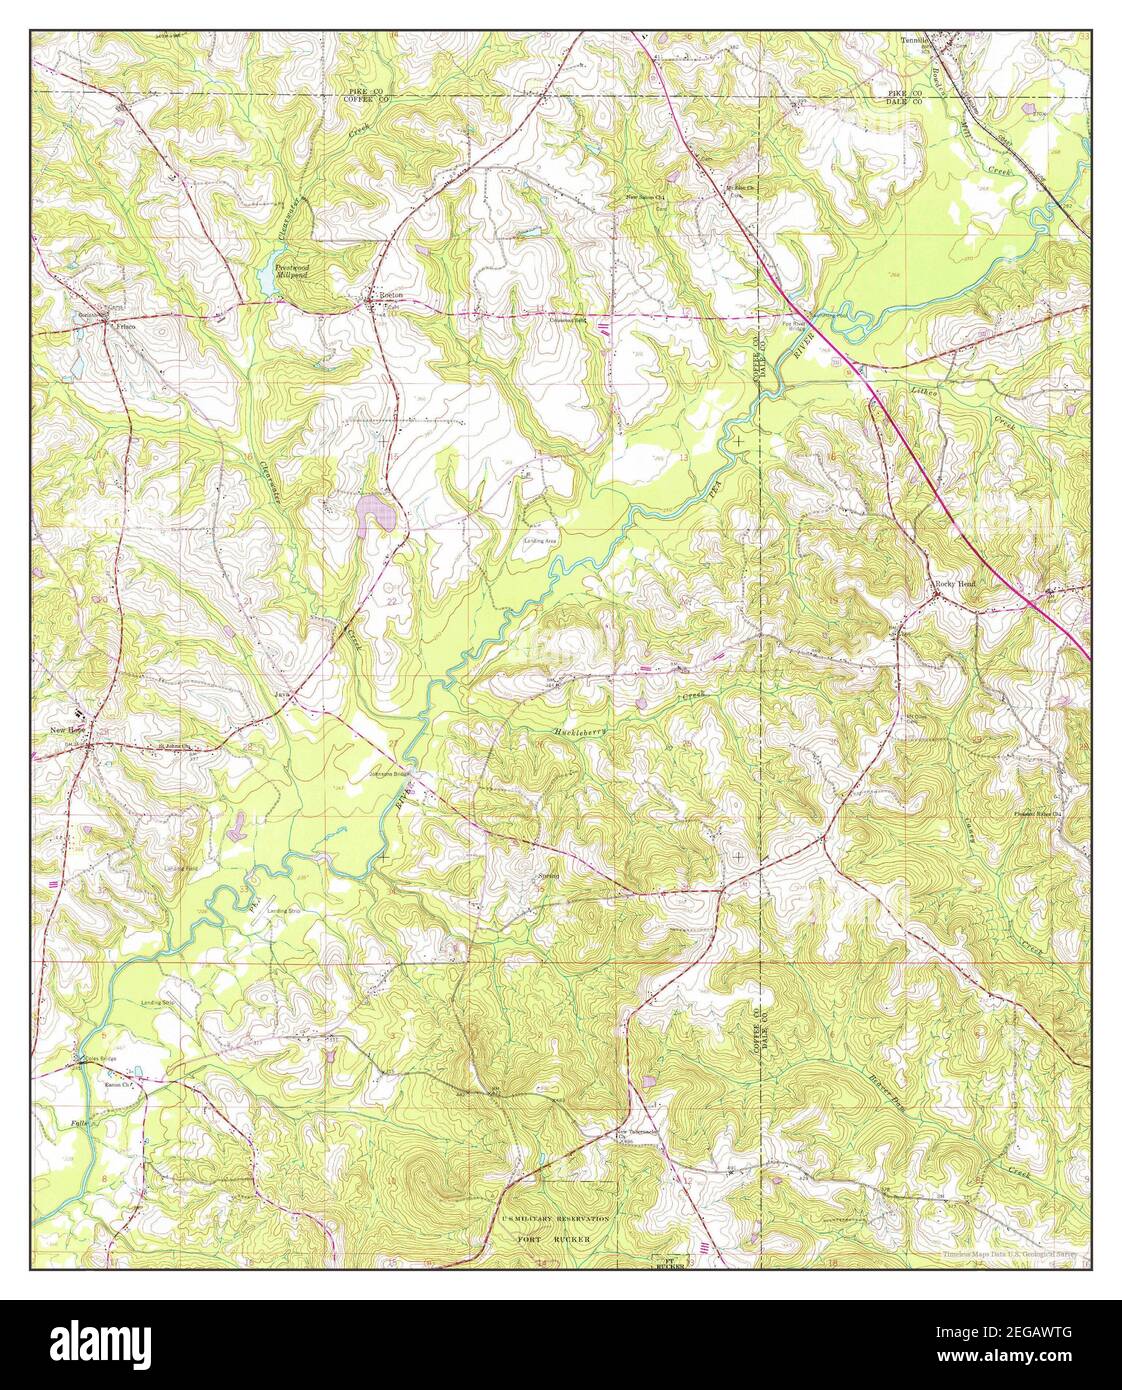 Brundidge SE, Alabama, map 1960, 1:24000, United States of America by Timeless Maps, data U.S. Geological Survey Stock Photo